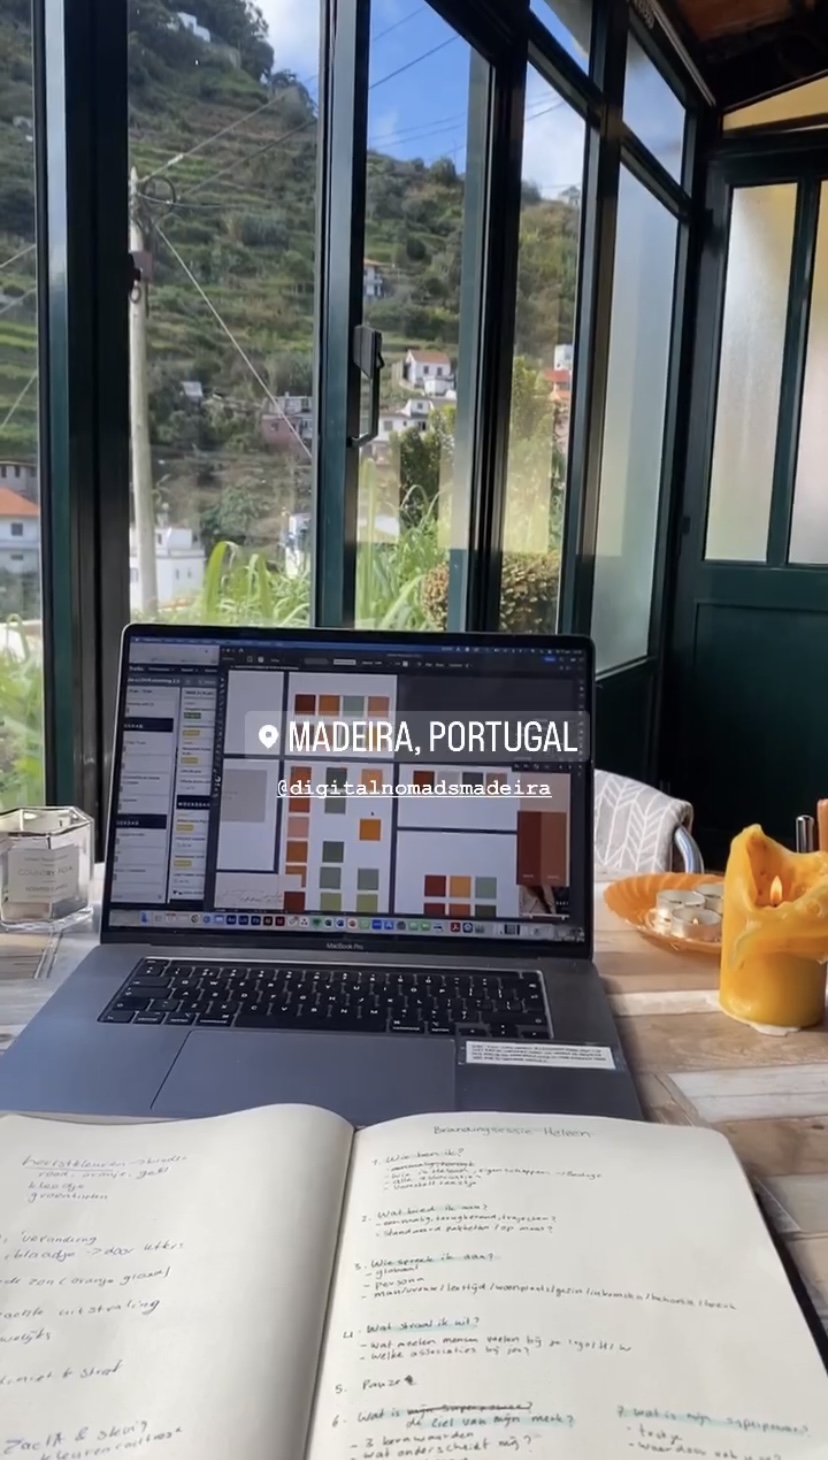 Digital nomad Madeira